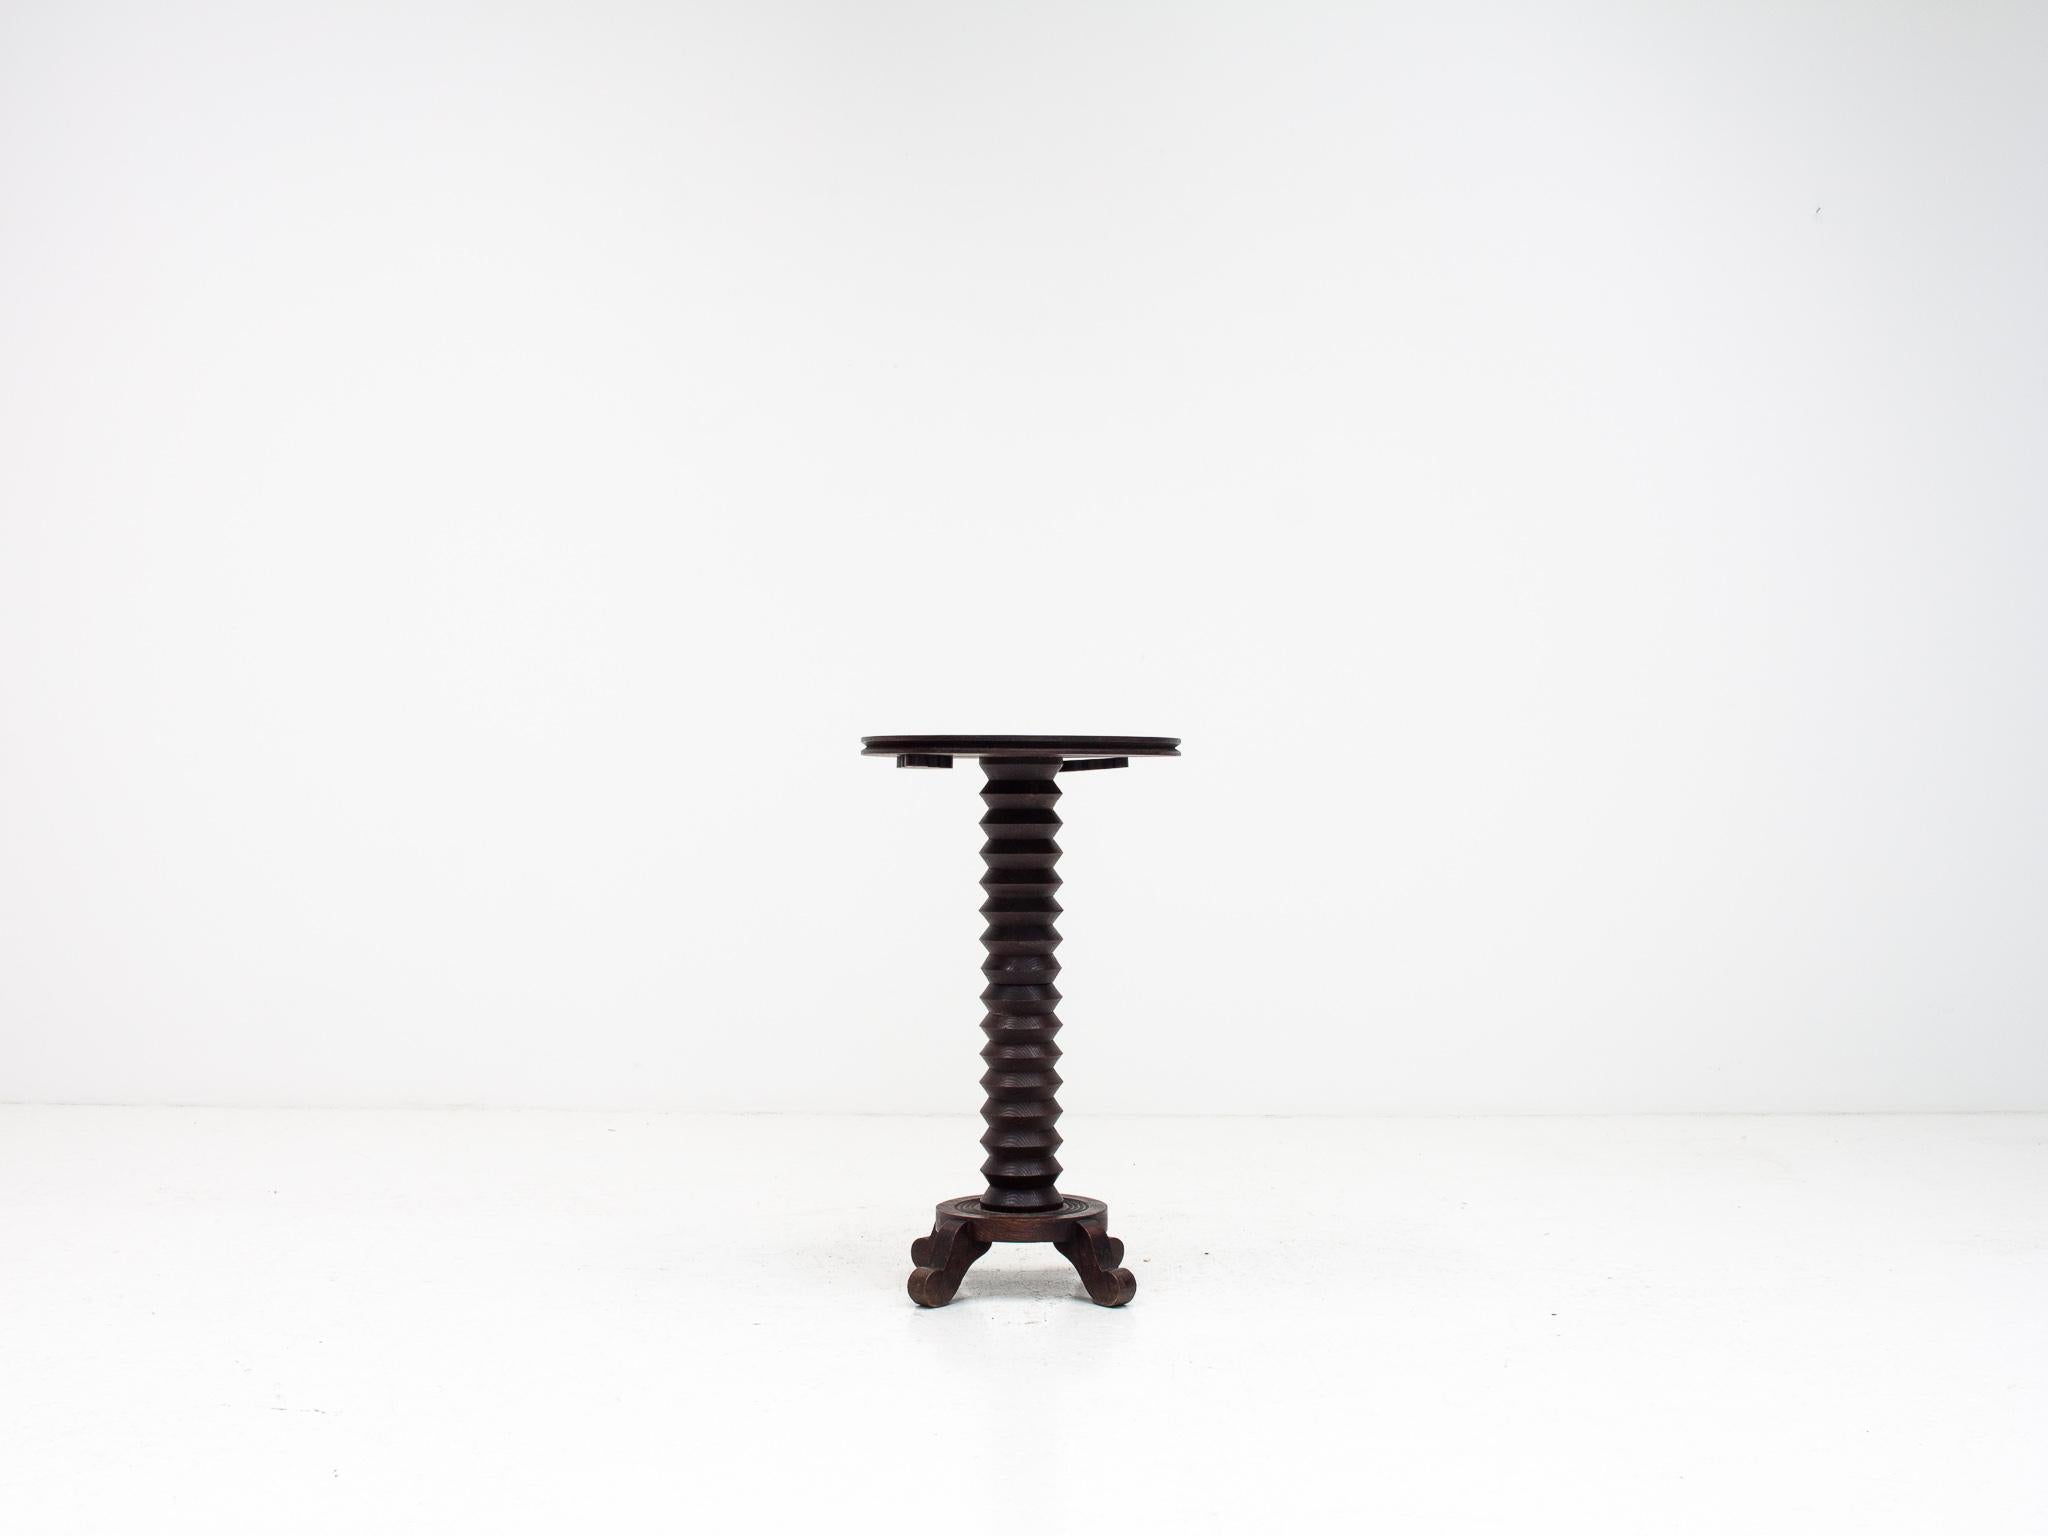 Ein französischer Sockeltisch mit gedrechseltem Säulenstiel, der an die Entwürfe von Charles Dudouyt erinnert.  Wahrscheinlich aus dem frühen 20. Jahrhundert.

Das Stück passt zu einer Einrichtung, in der verschiedene Stile und Epochen miteinander